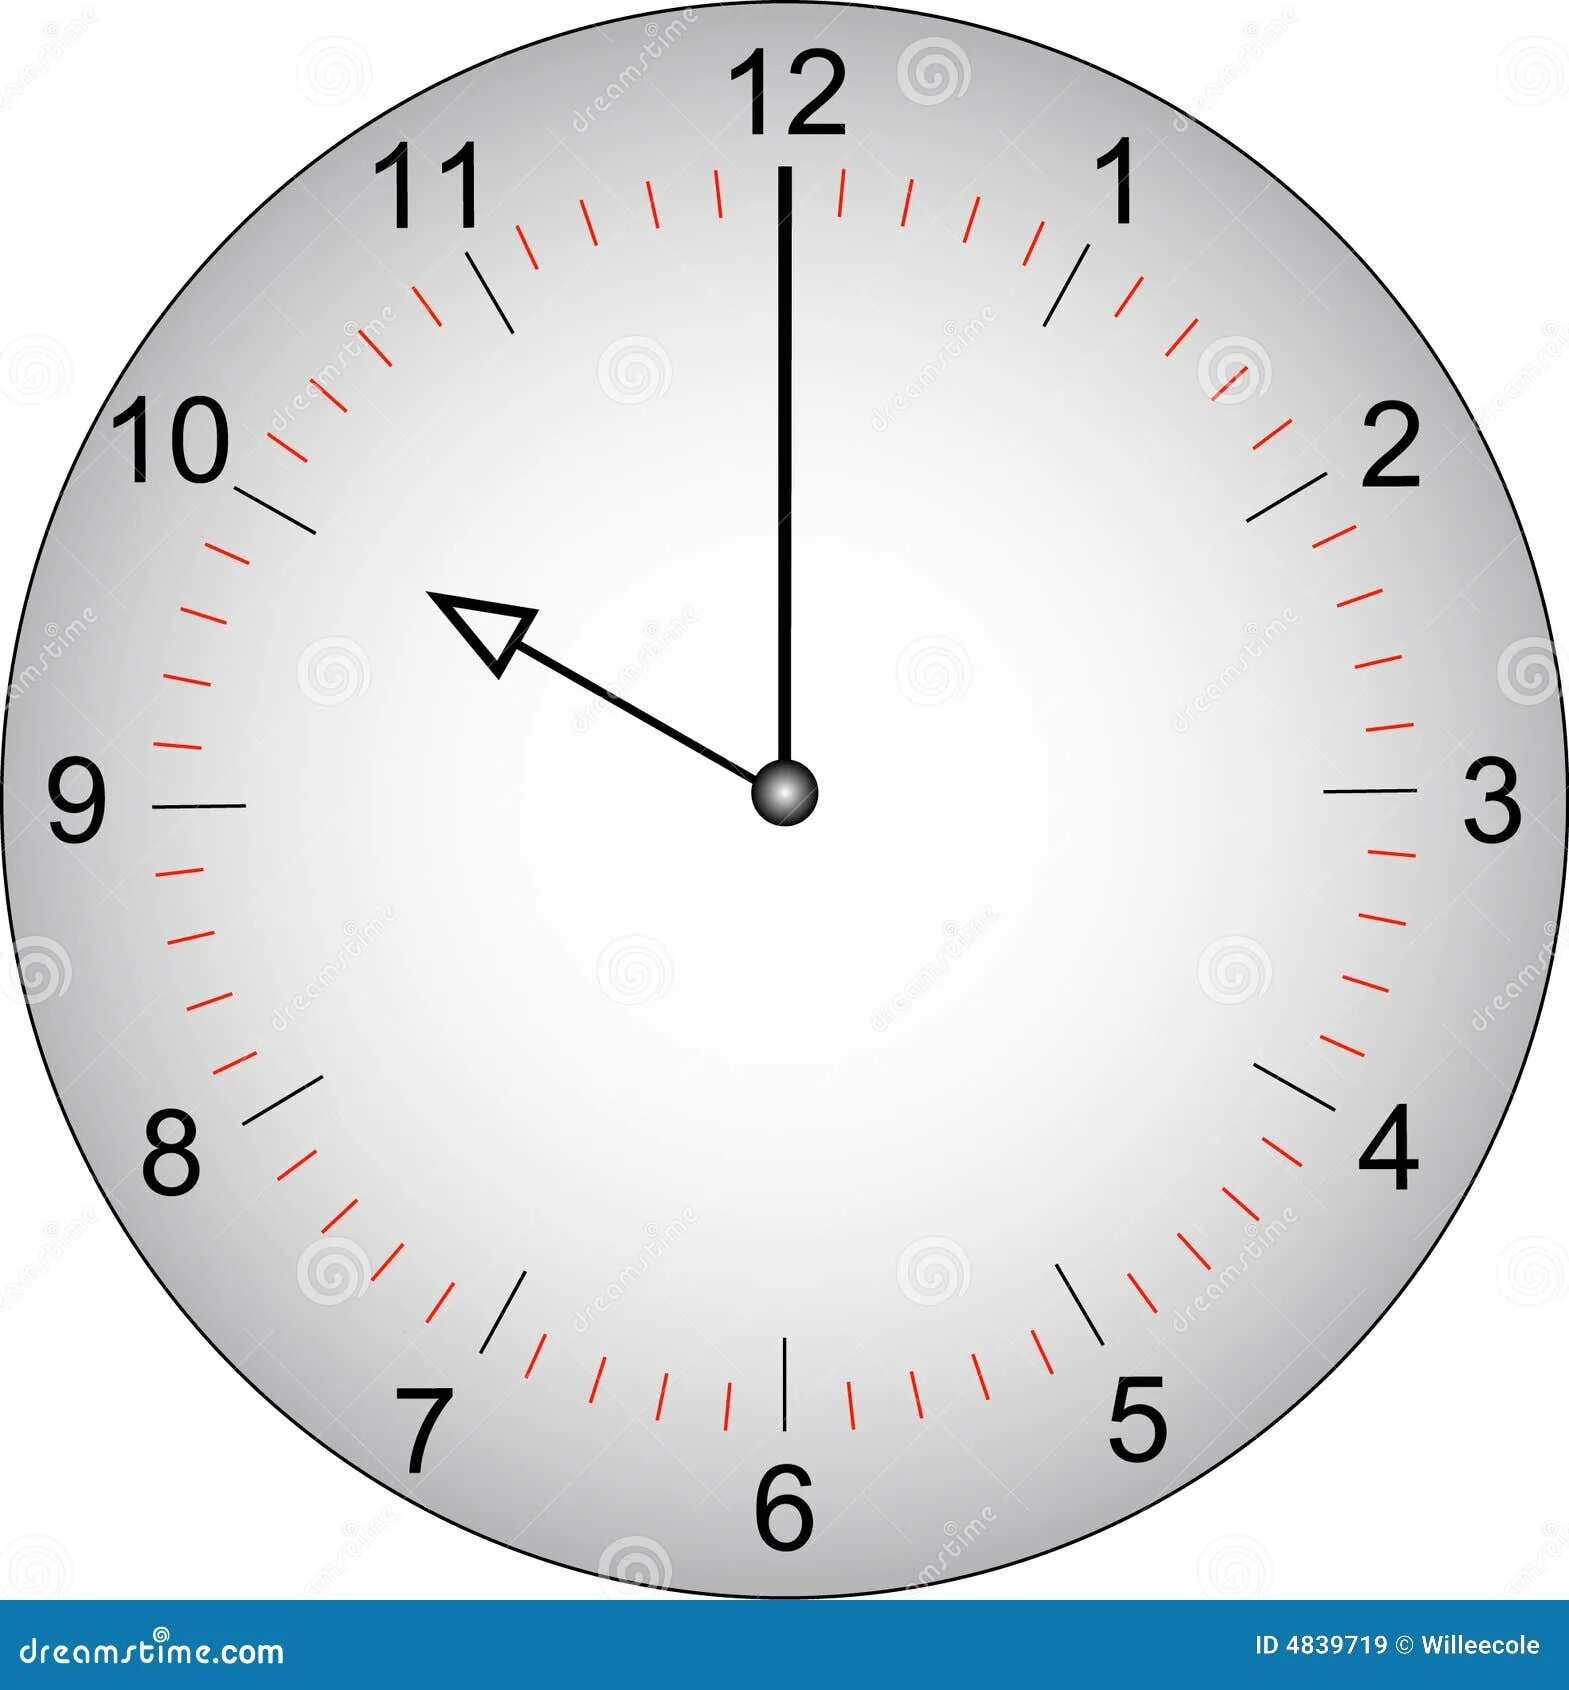 Объеме 10 часов. Аналоговые часы циферблат. Циферблат 12 часов. Циферблат 10 часов. Часы циферблат 10.